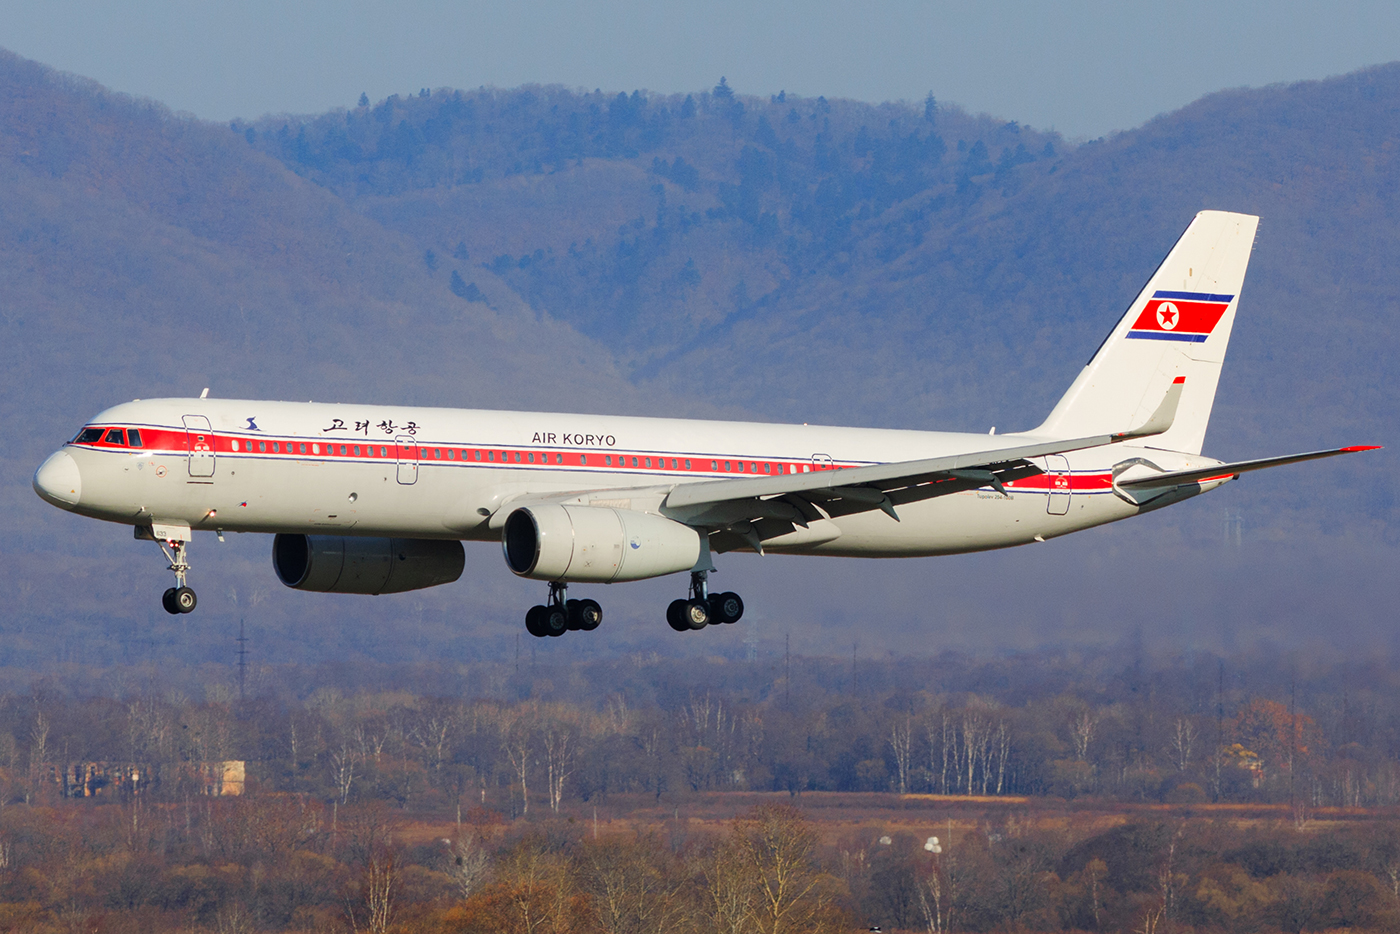 Macau-Pyongyang flights to restart on August 2